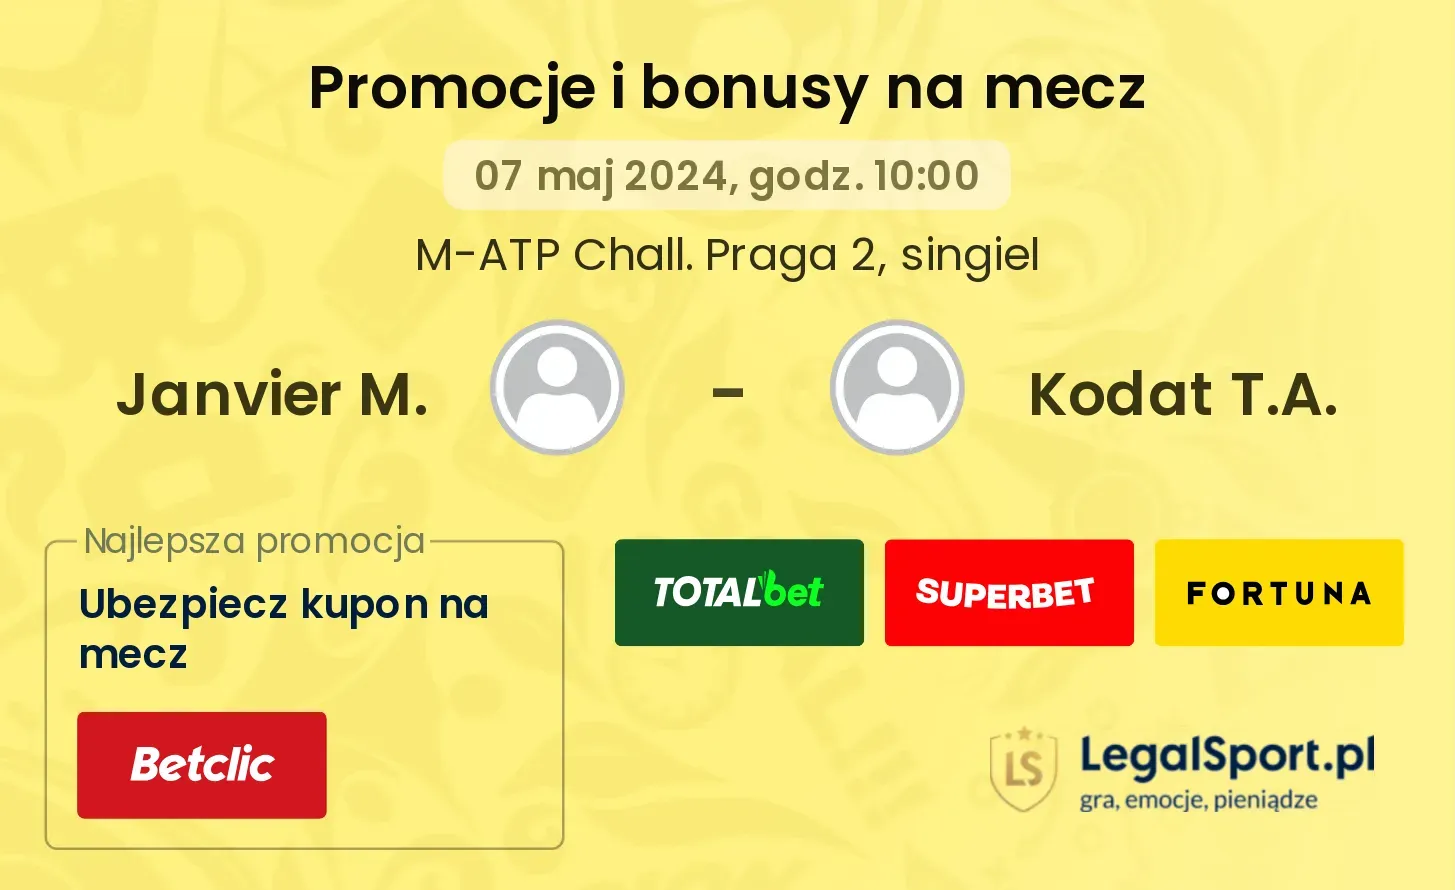 Janvier M. - Kodat T.A. promocje bonusy na mecz